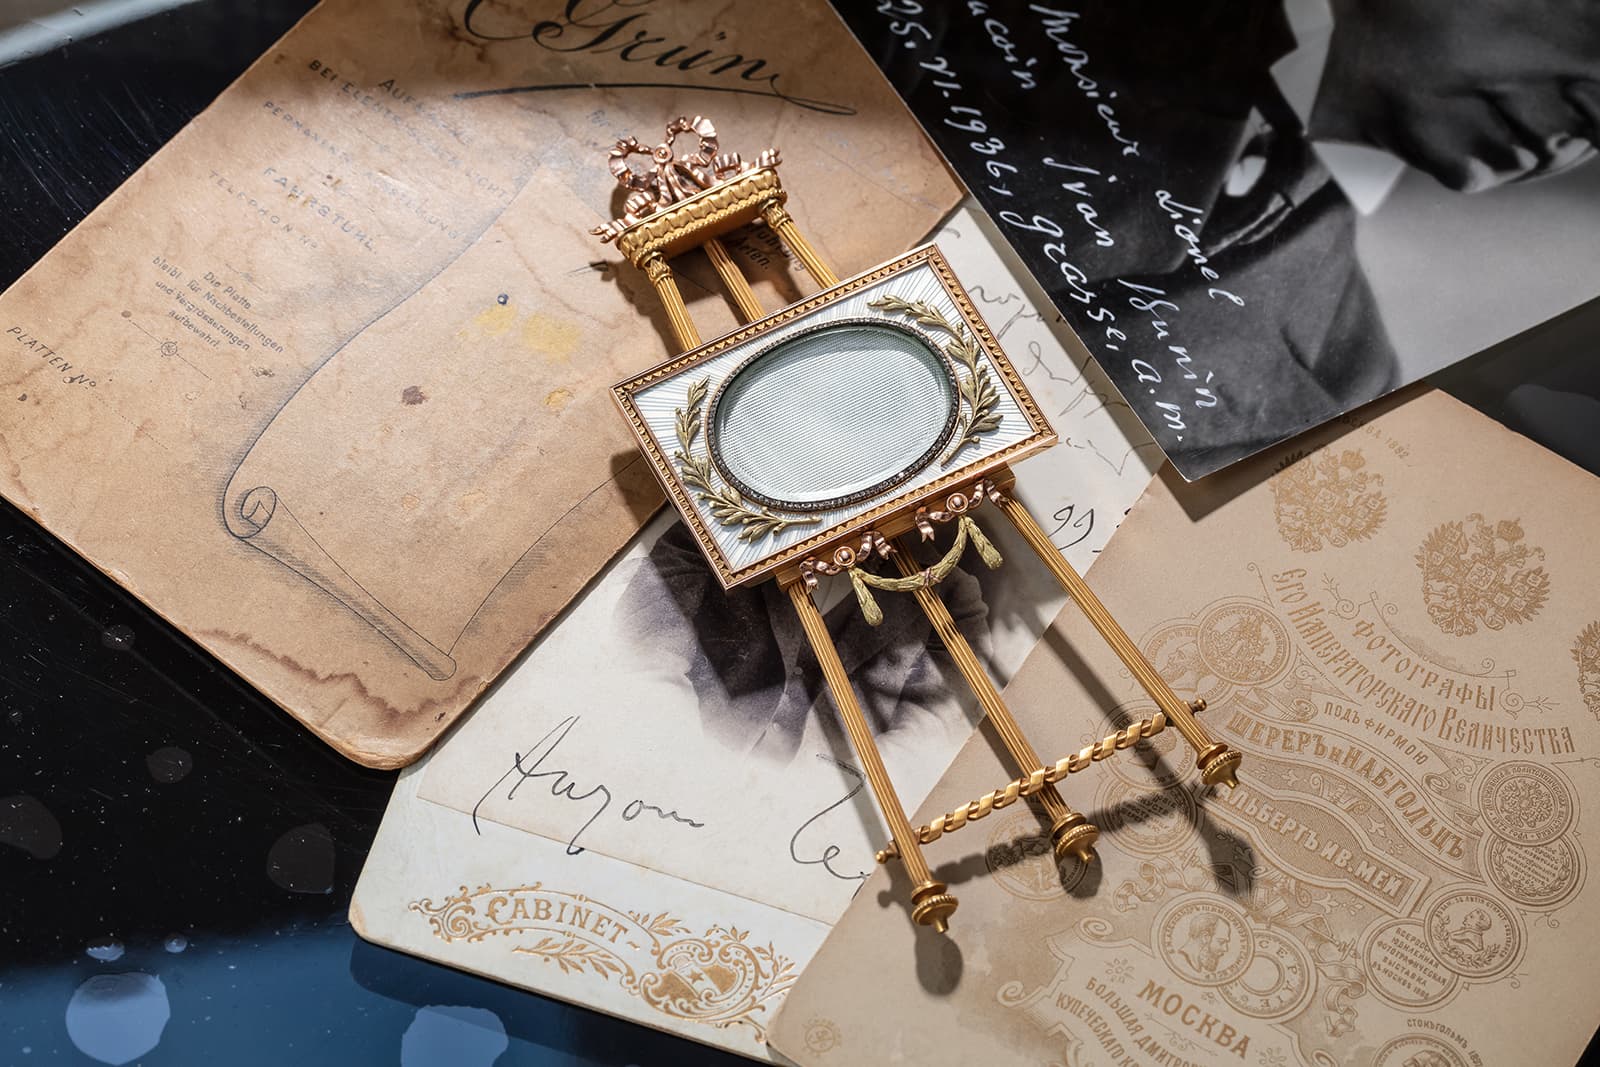 Рамка для фотографии Fabergé из трехцветного золота, украшенная драгоценными камнями и эмалью гильоше (1899-1908гг.) - будет продана на Christie’s в Лондоне в ноябре 2021 г.